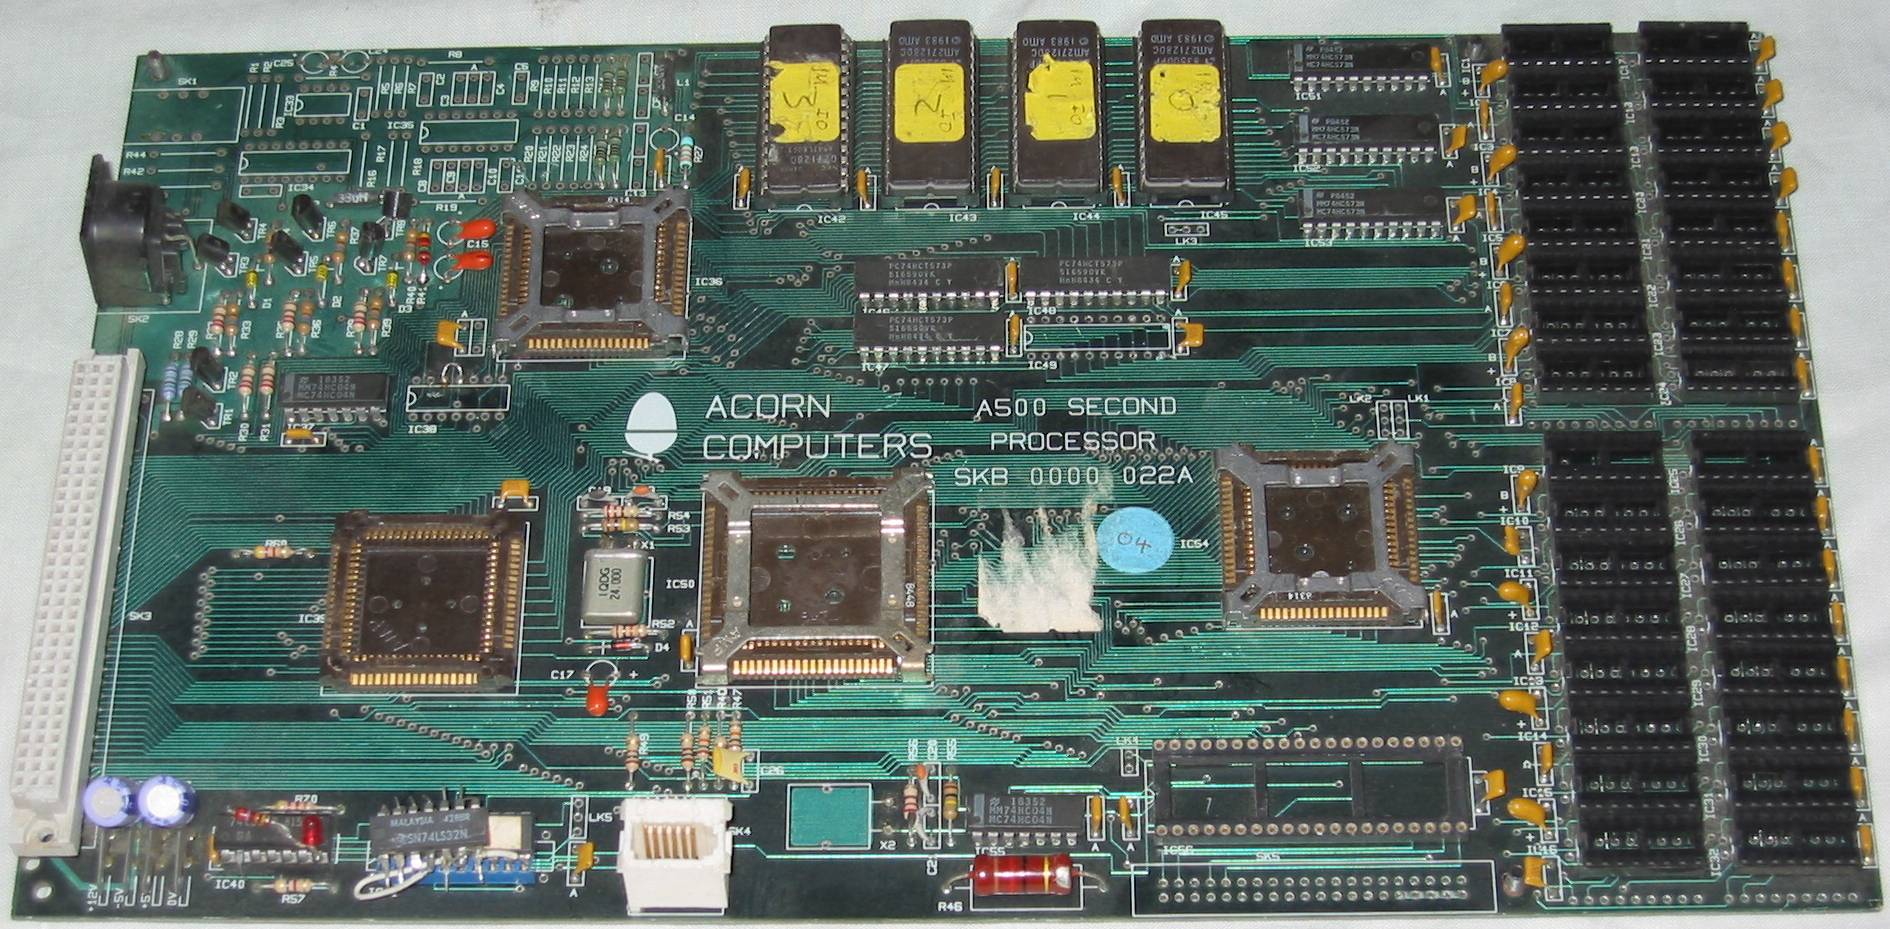 Acorn A500 2nd processor HiRes